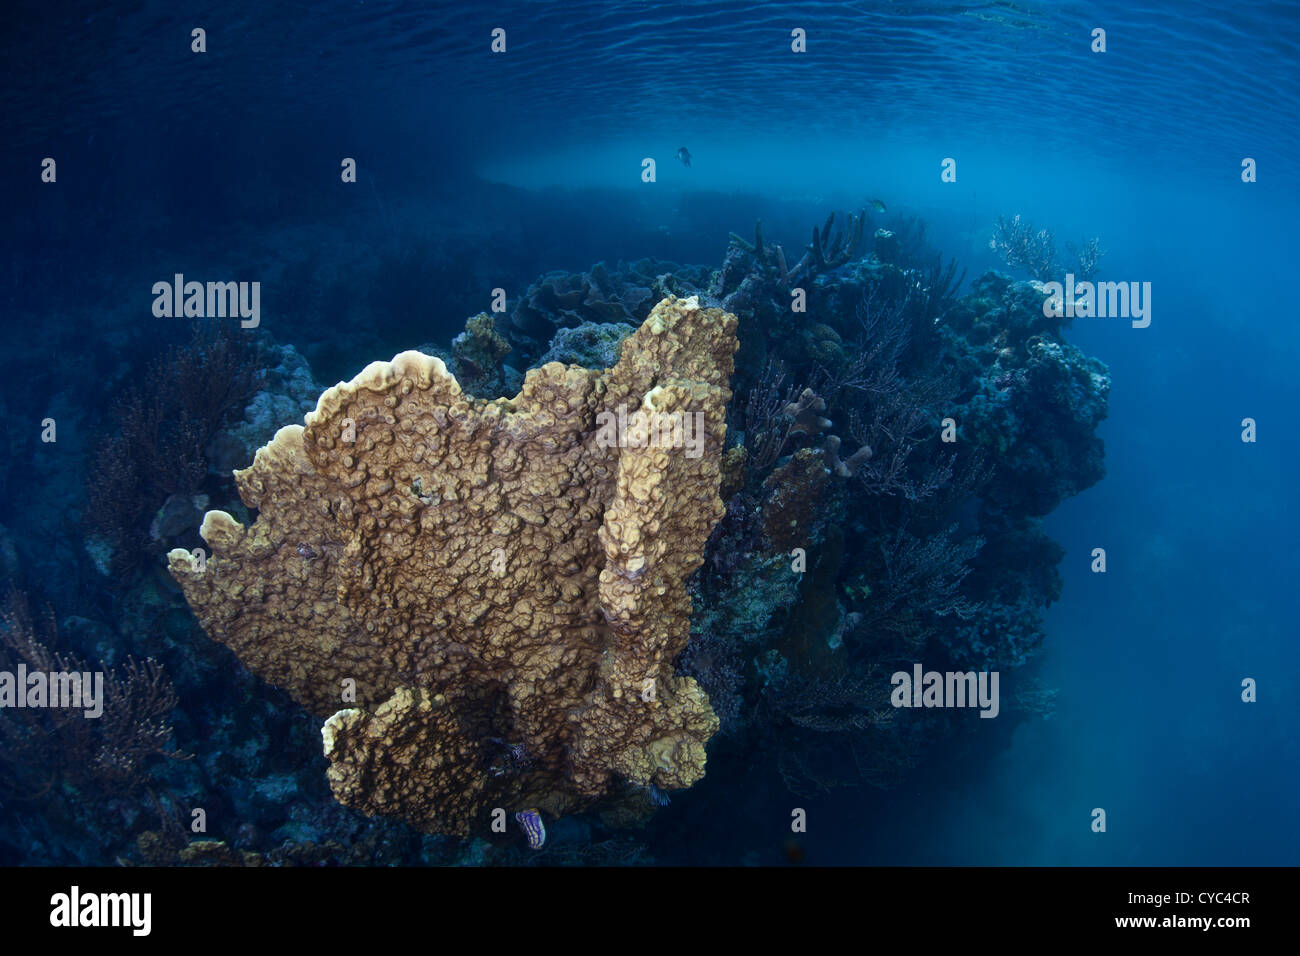 Eine Feuer Korallen Kolonie, Millipora SP., wächst in einer ruhigen Meeres-See geschützt durch hohe Kalksteininseln, die es umgeben. Stockfoto